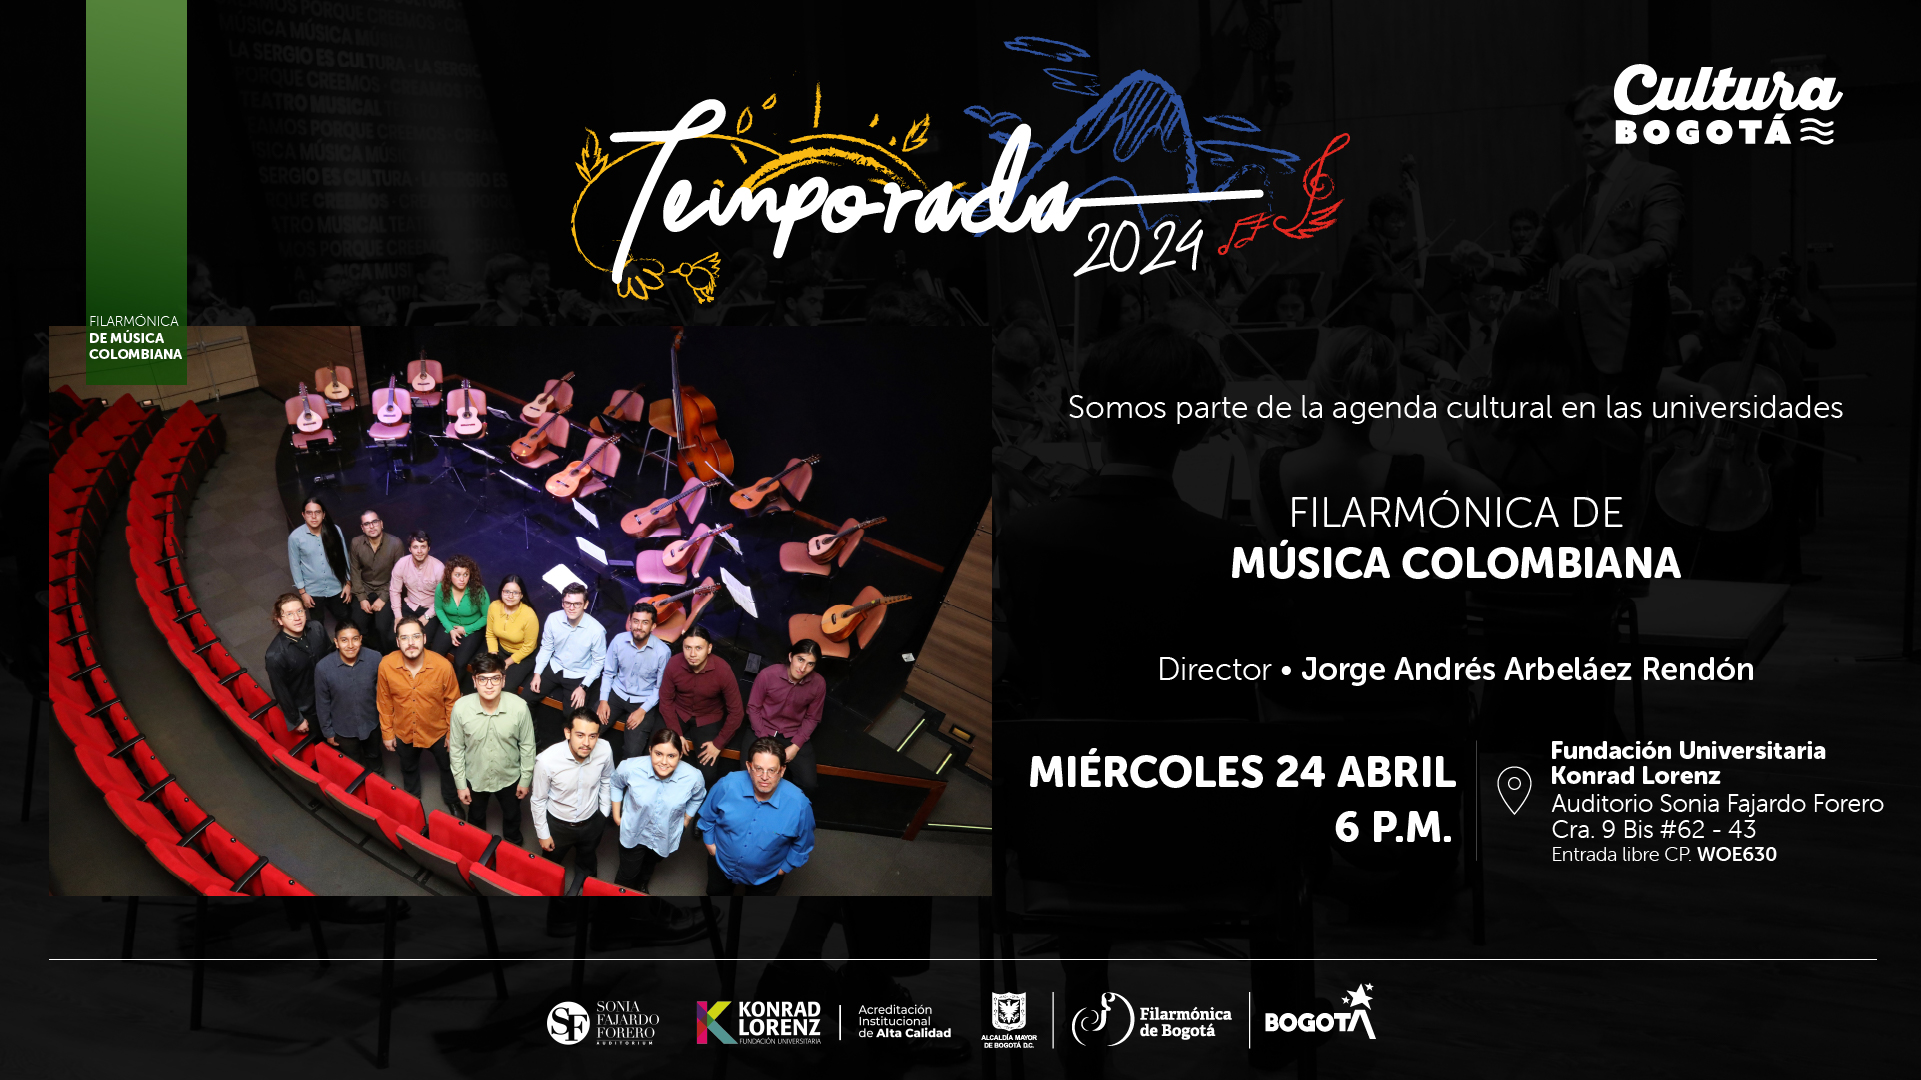 Somos parte de la agenda cultural en las universidades: Filarmónica de Música Colombiana Filarmónica de Música Colombiana